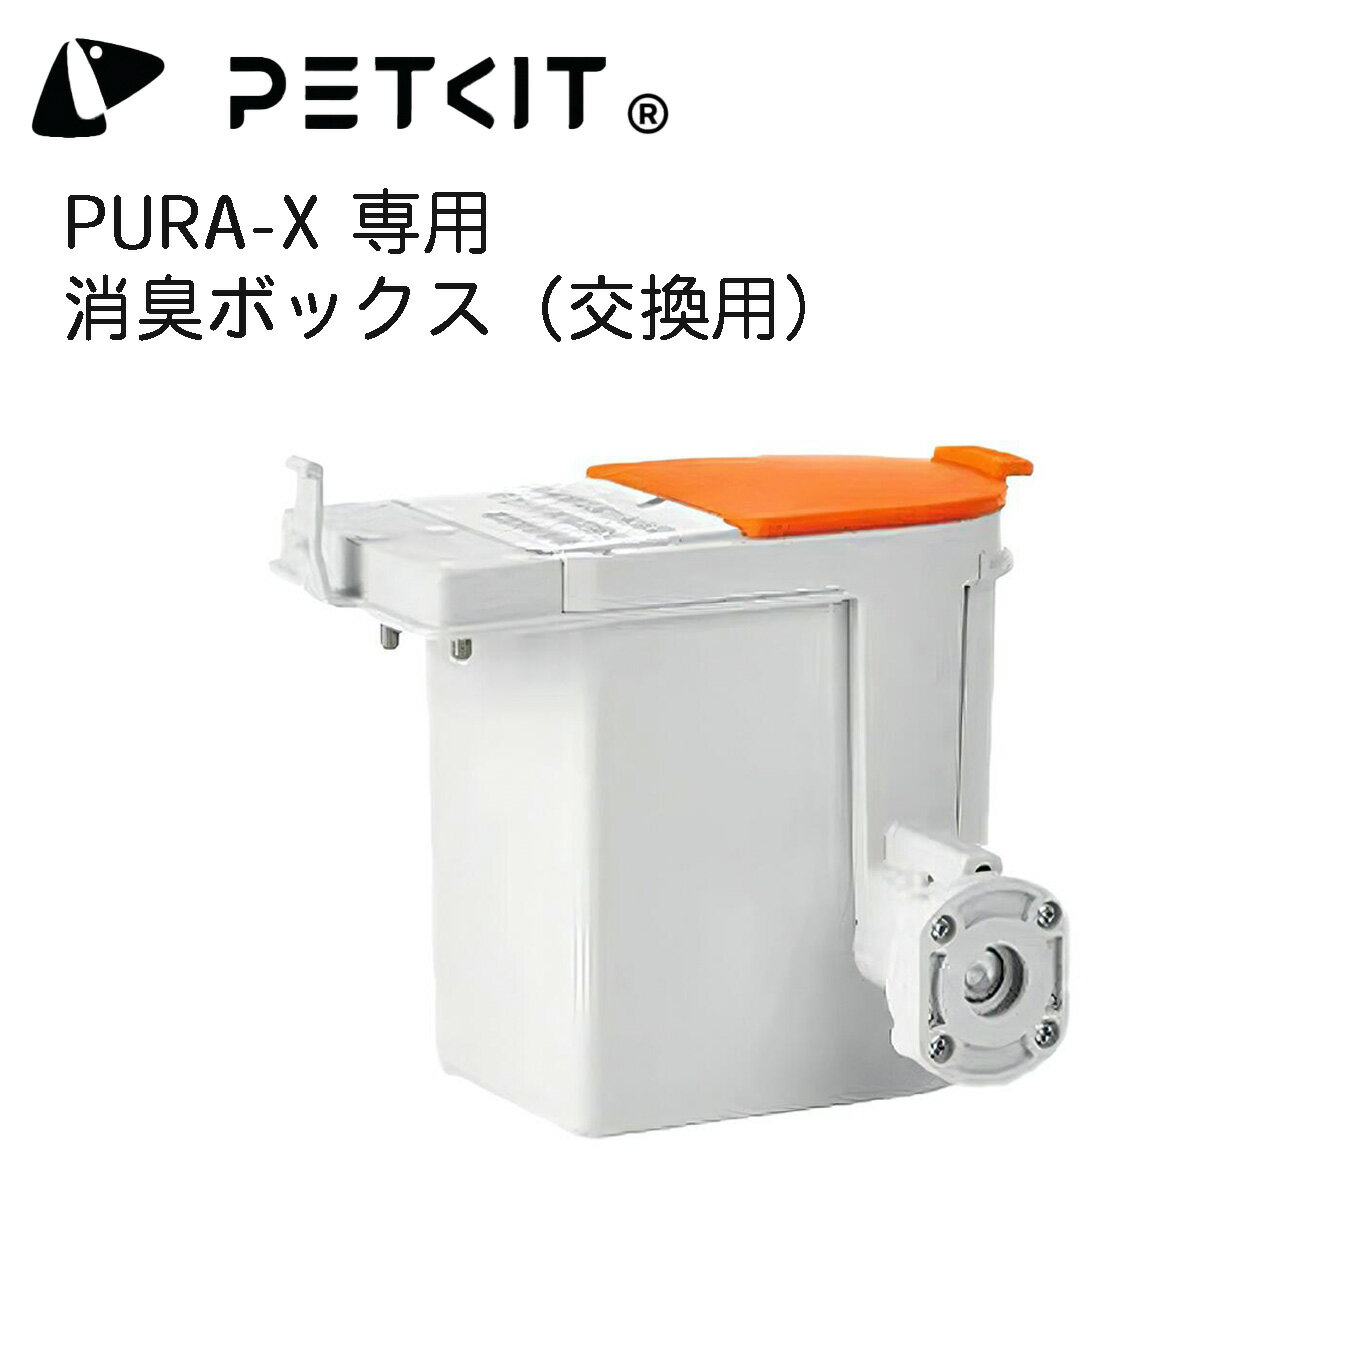 【PETKIT-PURA-X】消臭剤ボックス 自動トイレ専用 交換用 消臭剤ボックス 消臭スプレー 機器 ペットキット